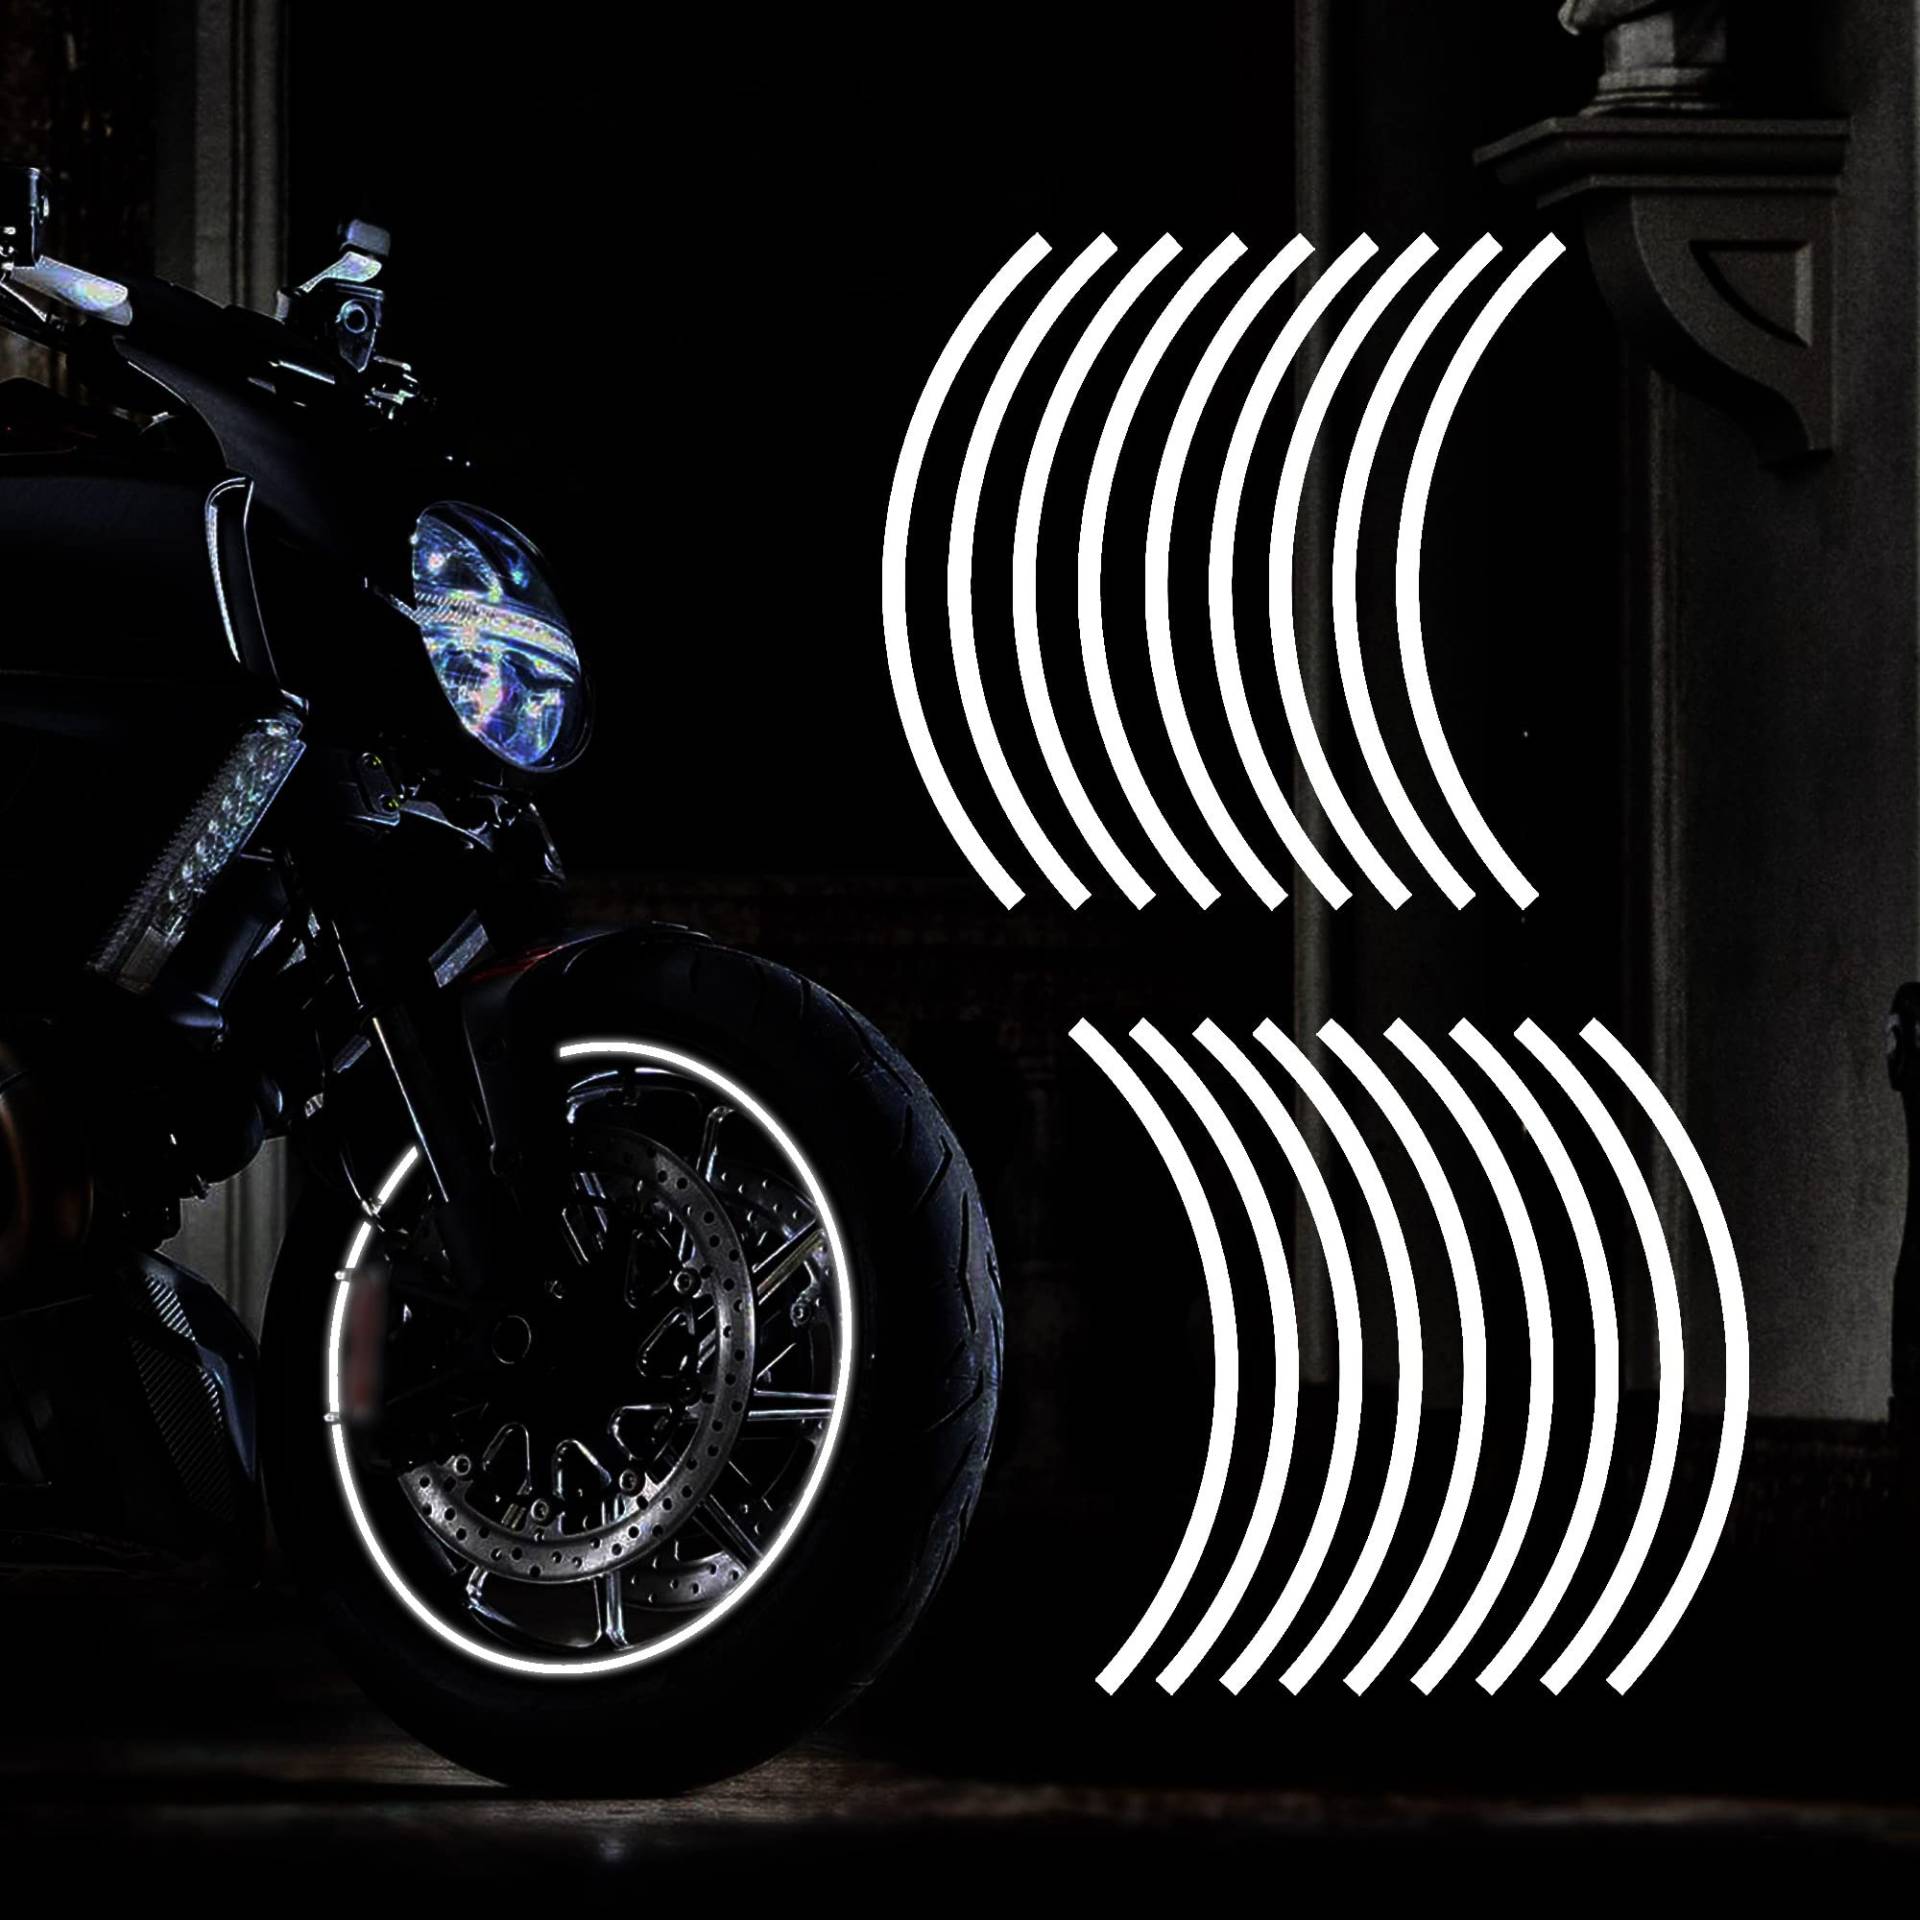 TOMALL 18pcs verlängern 43cm reflektierende Rad Felgenstreifen Aufkleber für Motorradräder Auto Radfahren Fahrrad Fahrrad Nacht reflektierende Sicherheit Dekoration Streifen Universal (Weiß) von TOMALL